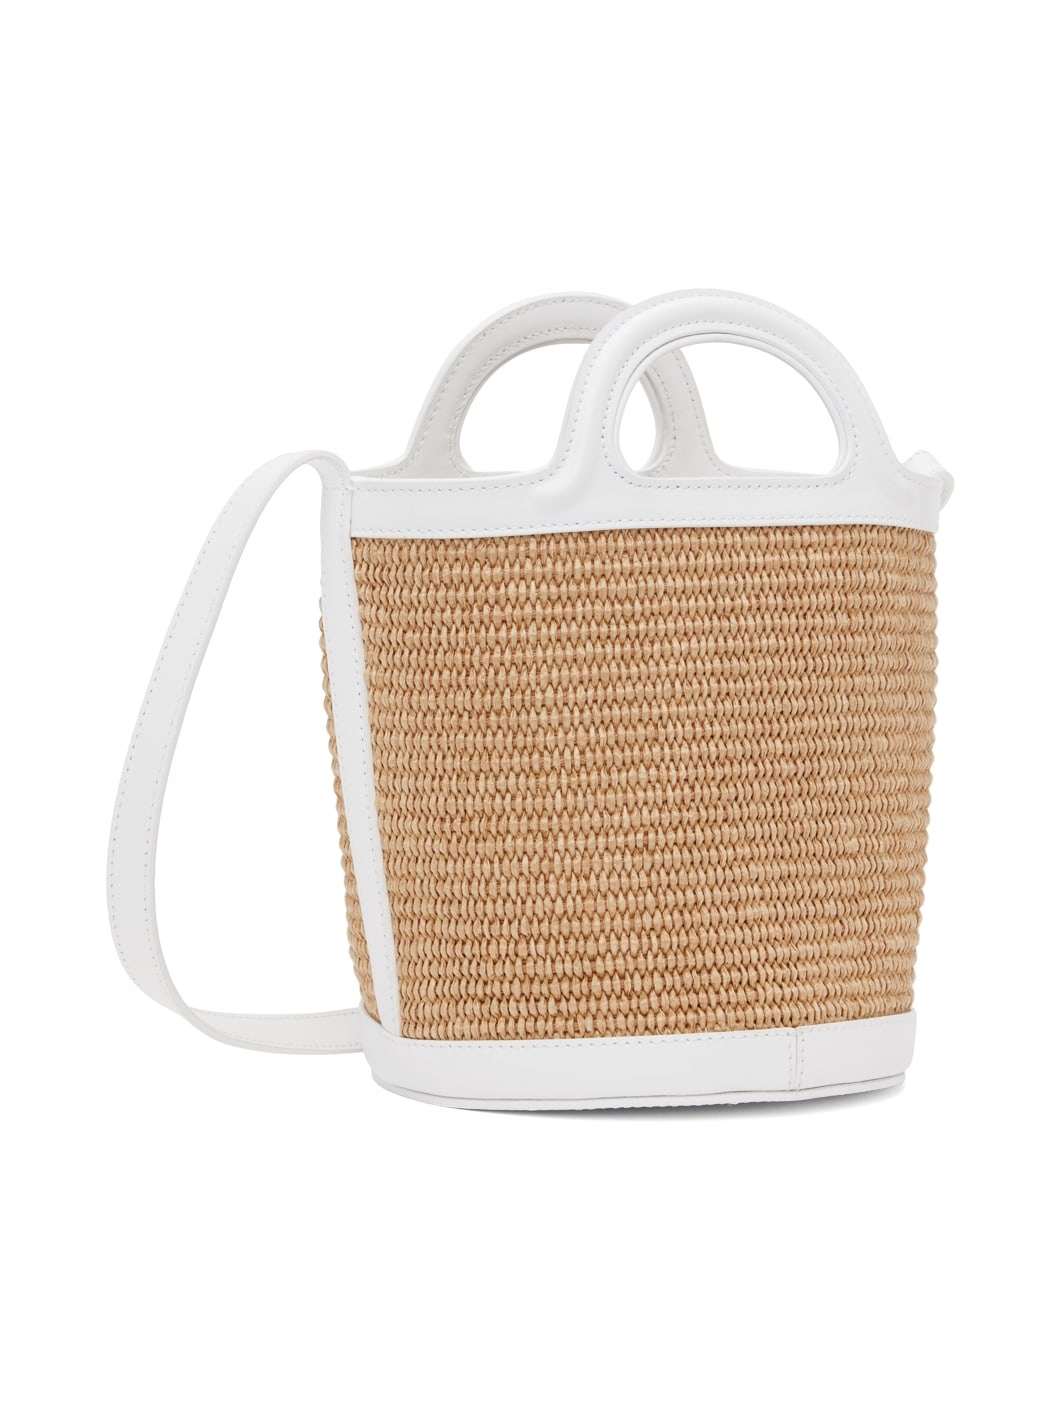 Beige & White Mini Tropicalia Bucket Bag - 3